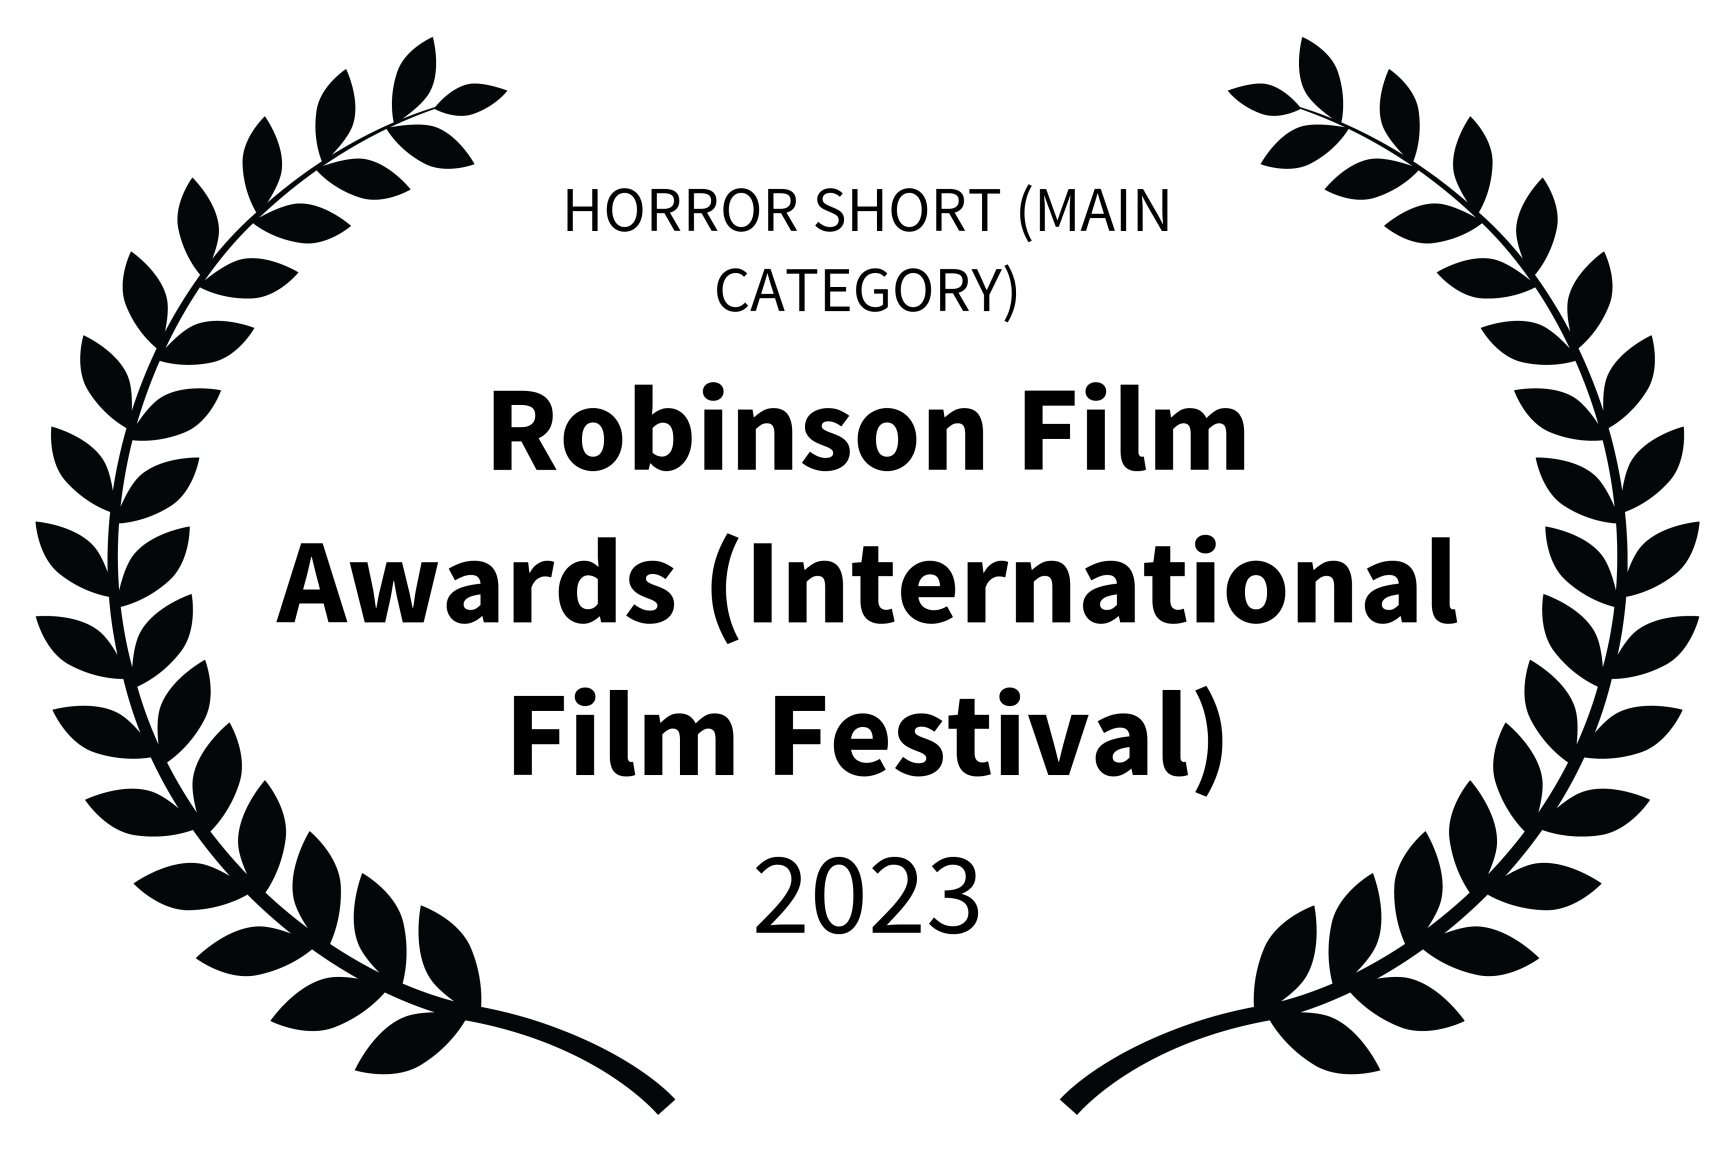 Prix Horror Short (Main Category) au concours Robinson Film Awards (International Film Festival)